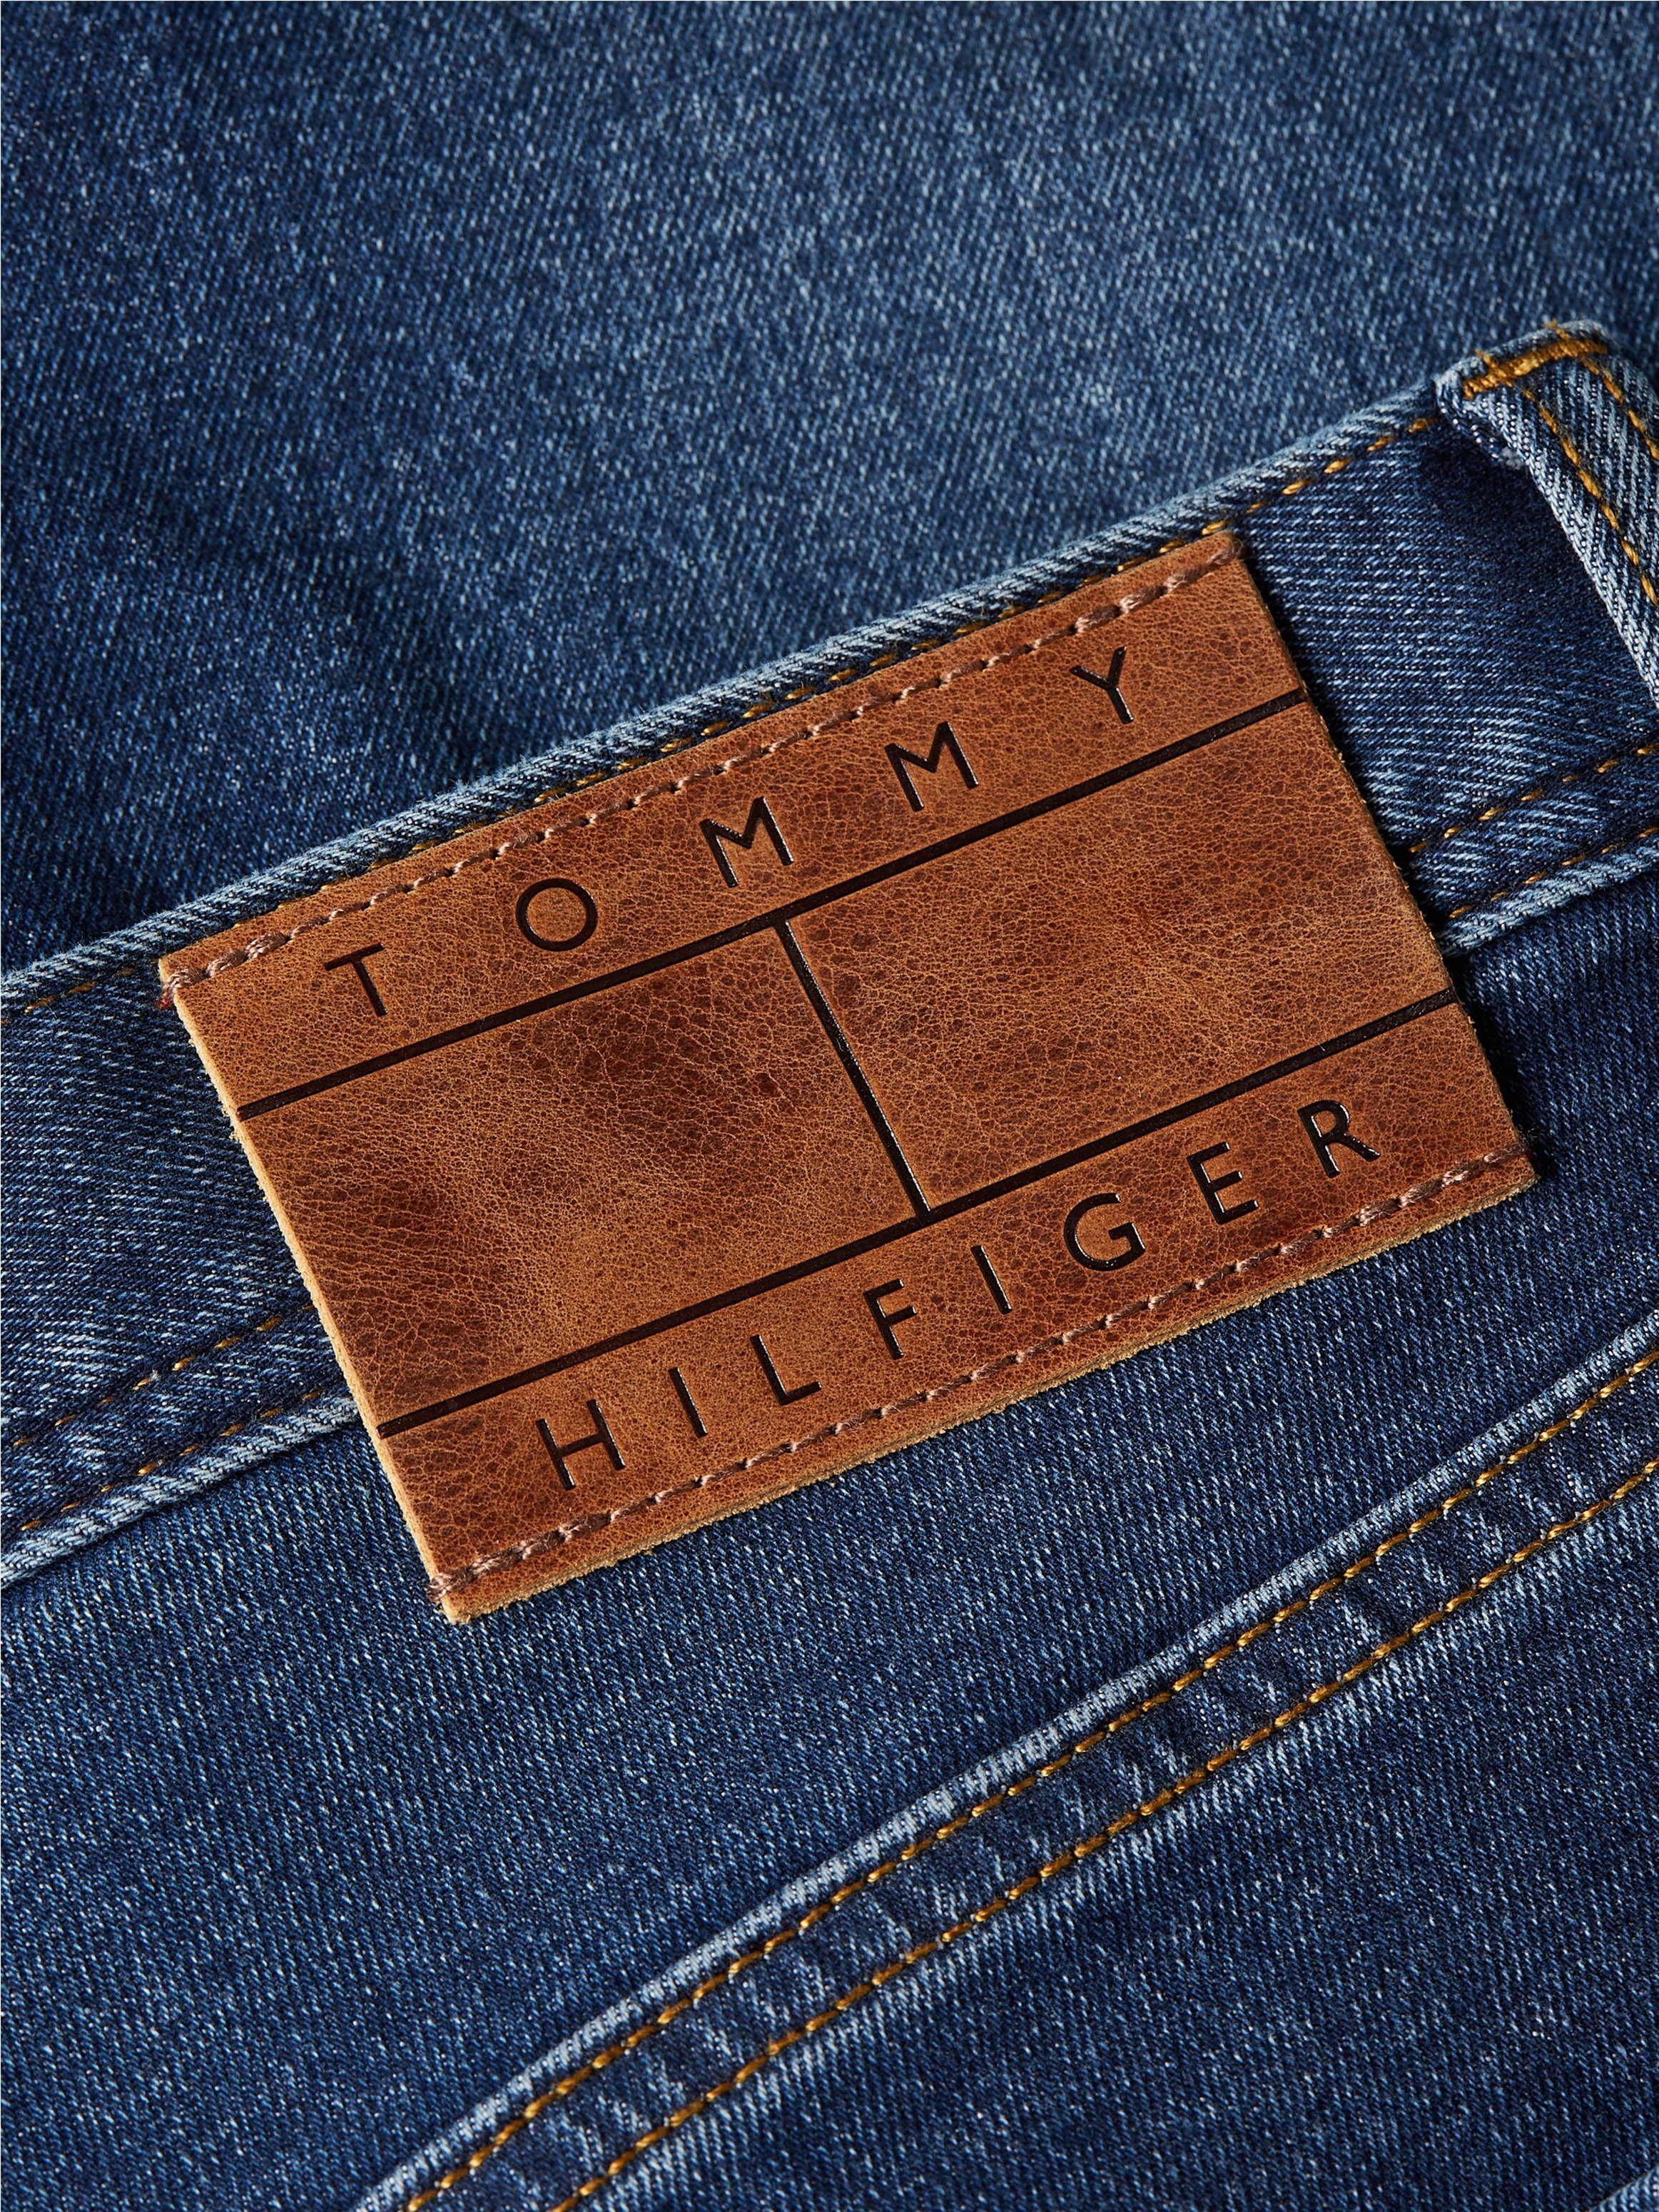 Leder-Batch am DENTON 1BX STR Hilfiger hinteren Hilfiger Tommy STRAIGHT Bundabschluss CHARLES mit Tommy Denim Straight-Jeans BLUE